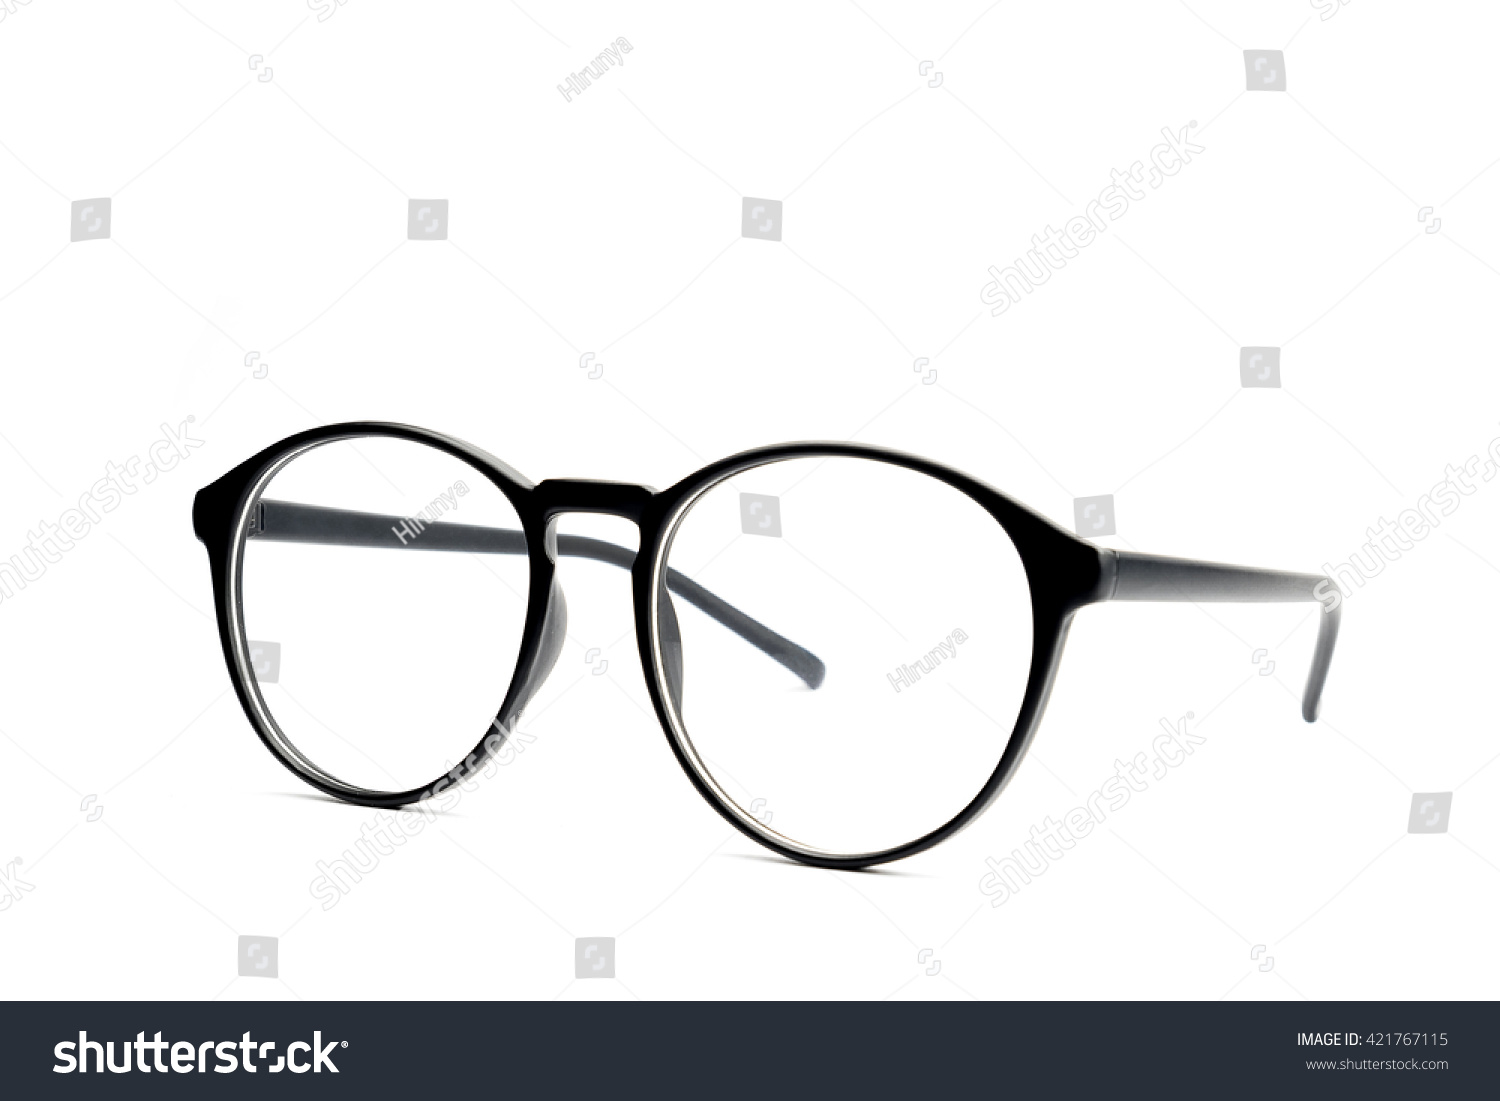 Black eye glasses Isolated on white background. #421767115